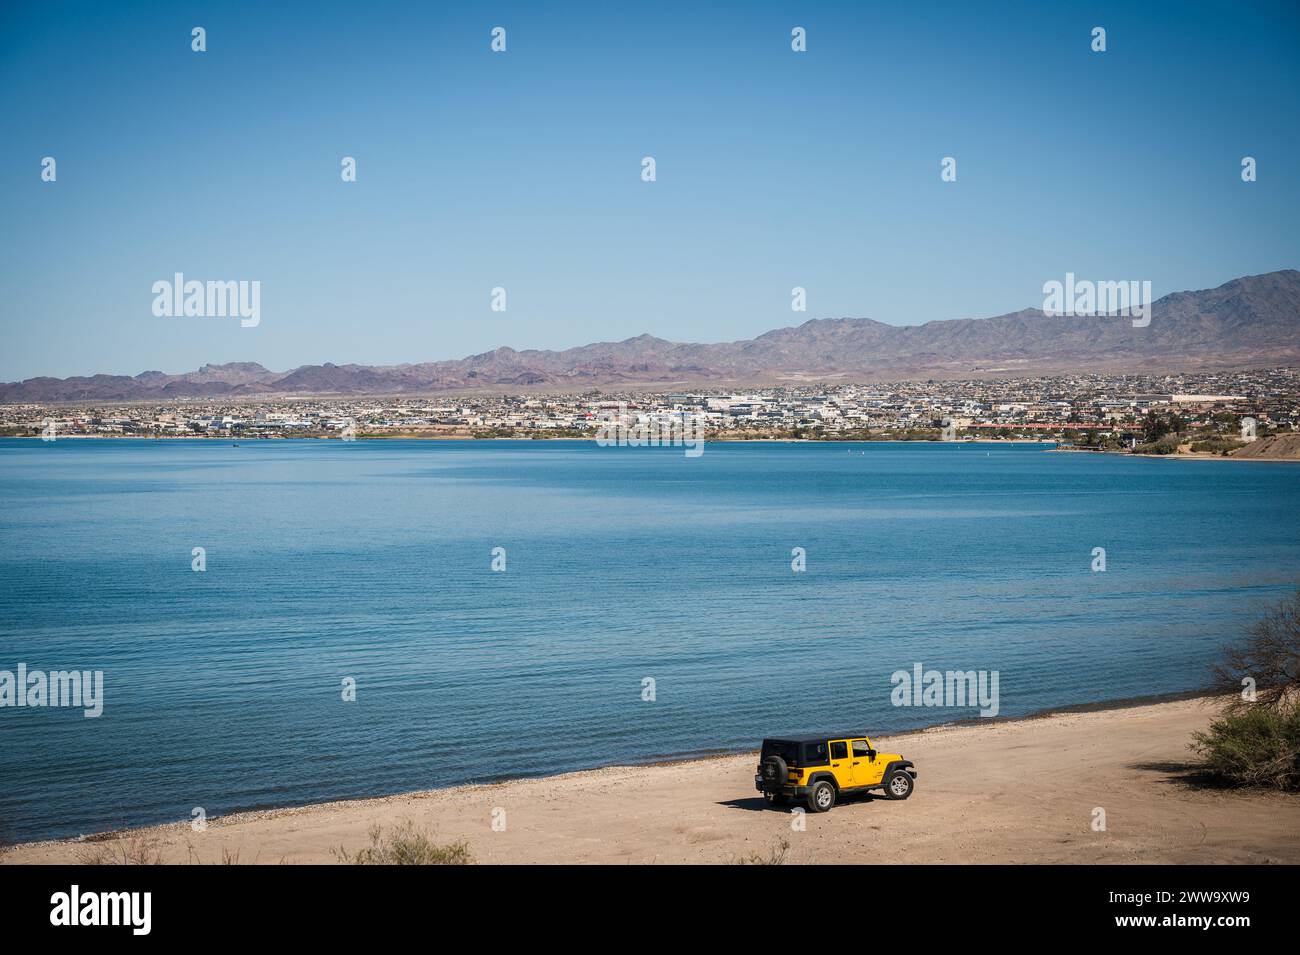 Un Jeep amarillo conduce a lo largo de las orillas del lago Havasu Arizona, EE.UU. Foto de stock